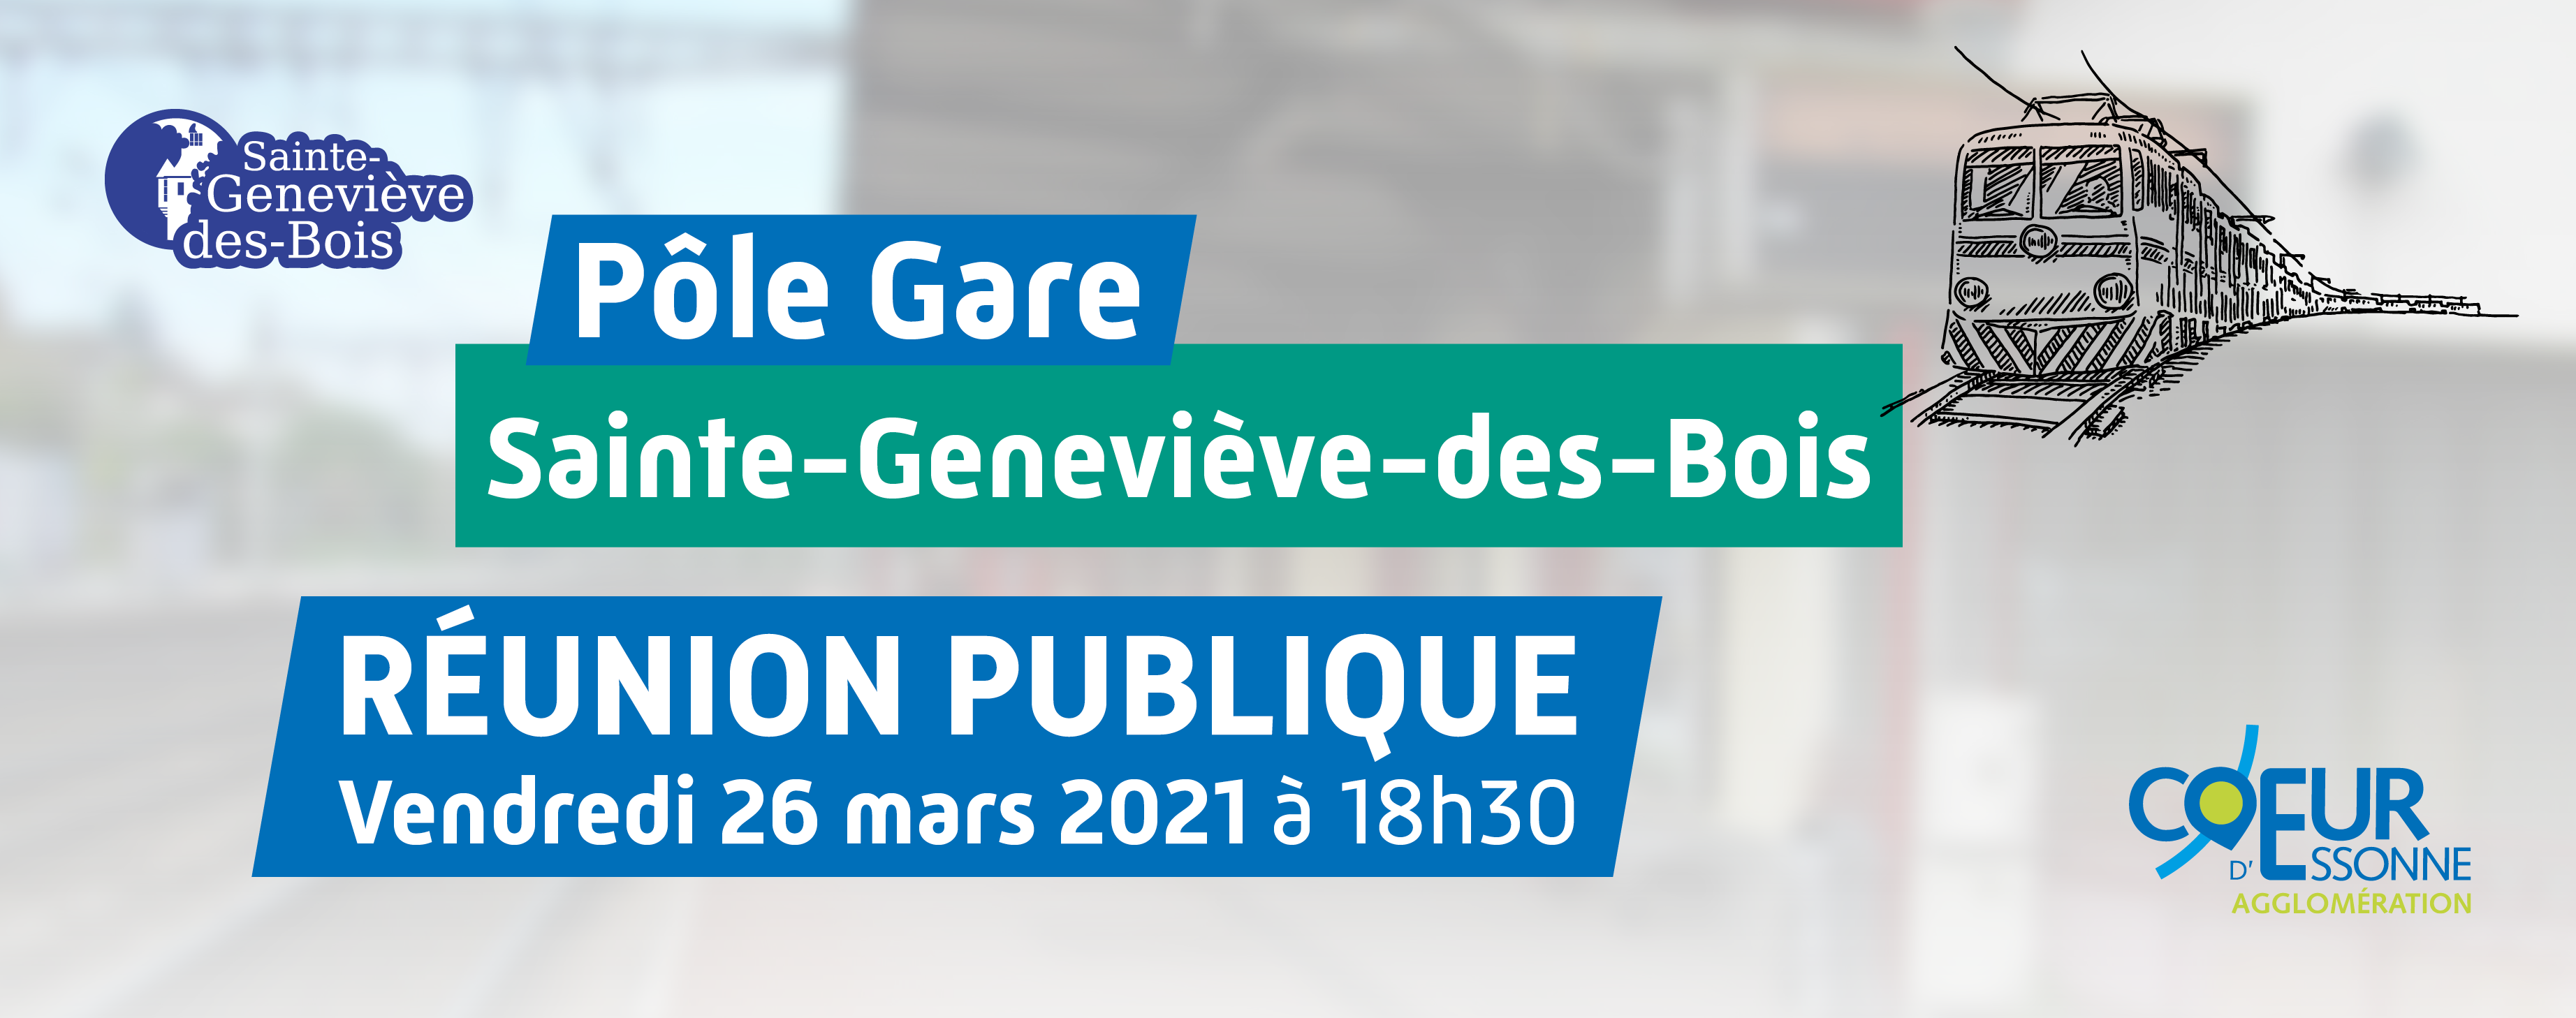 2021_03_23_banniere_pole_gare